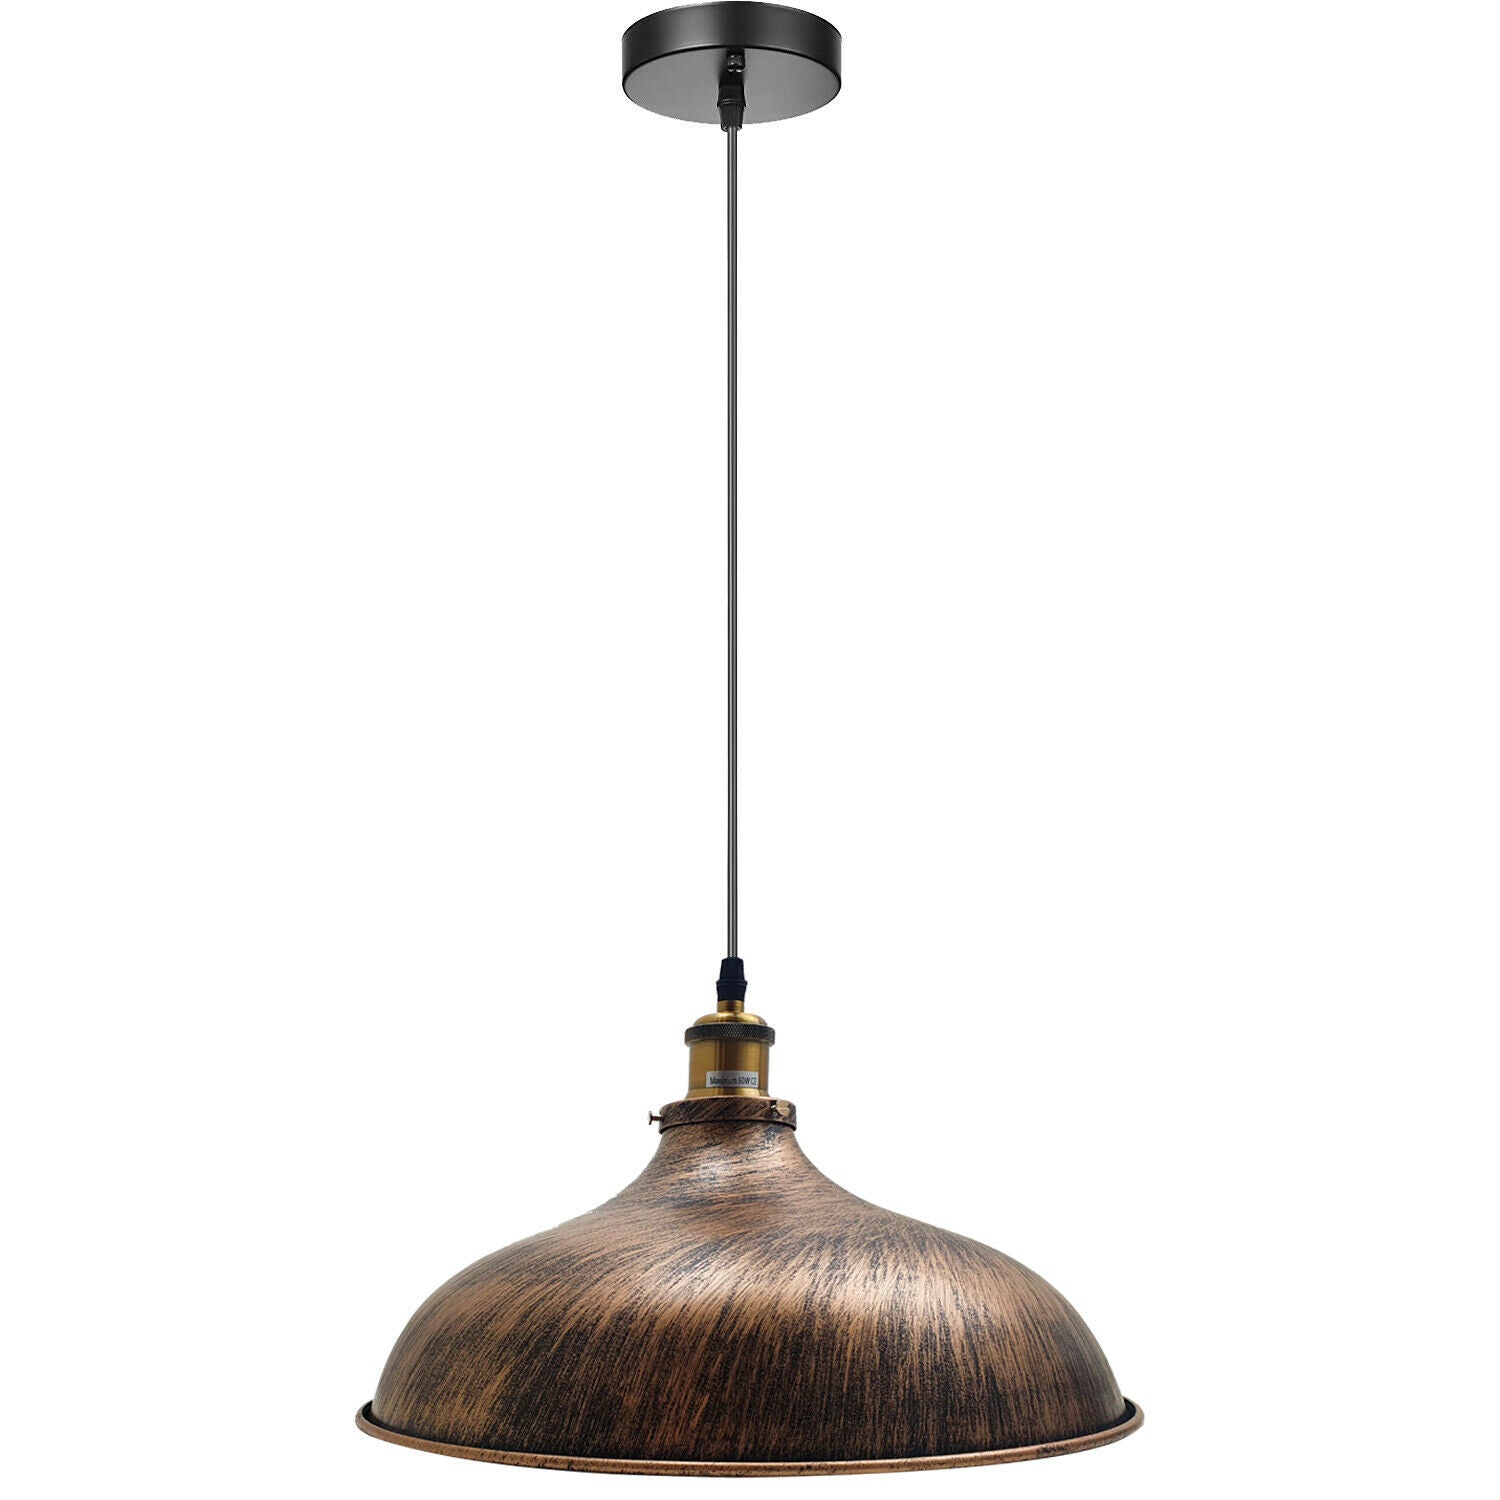 Billede af Copper Industrial Vintage Edison Light Bulb Pendant